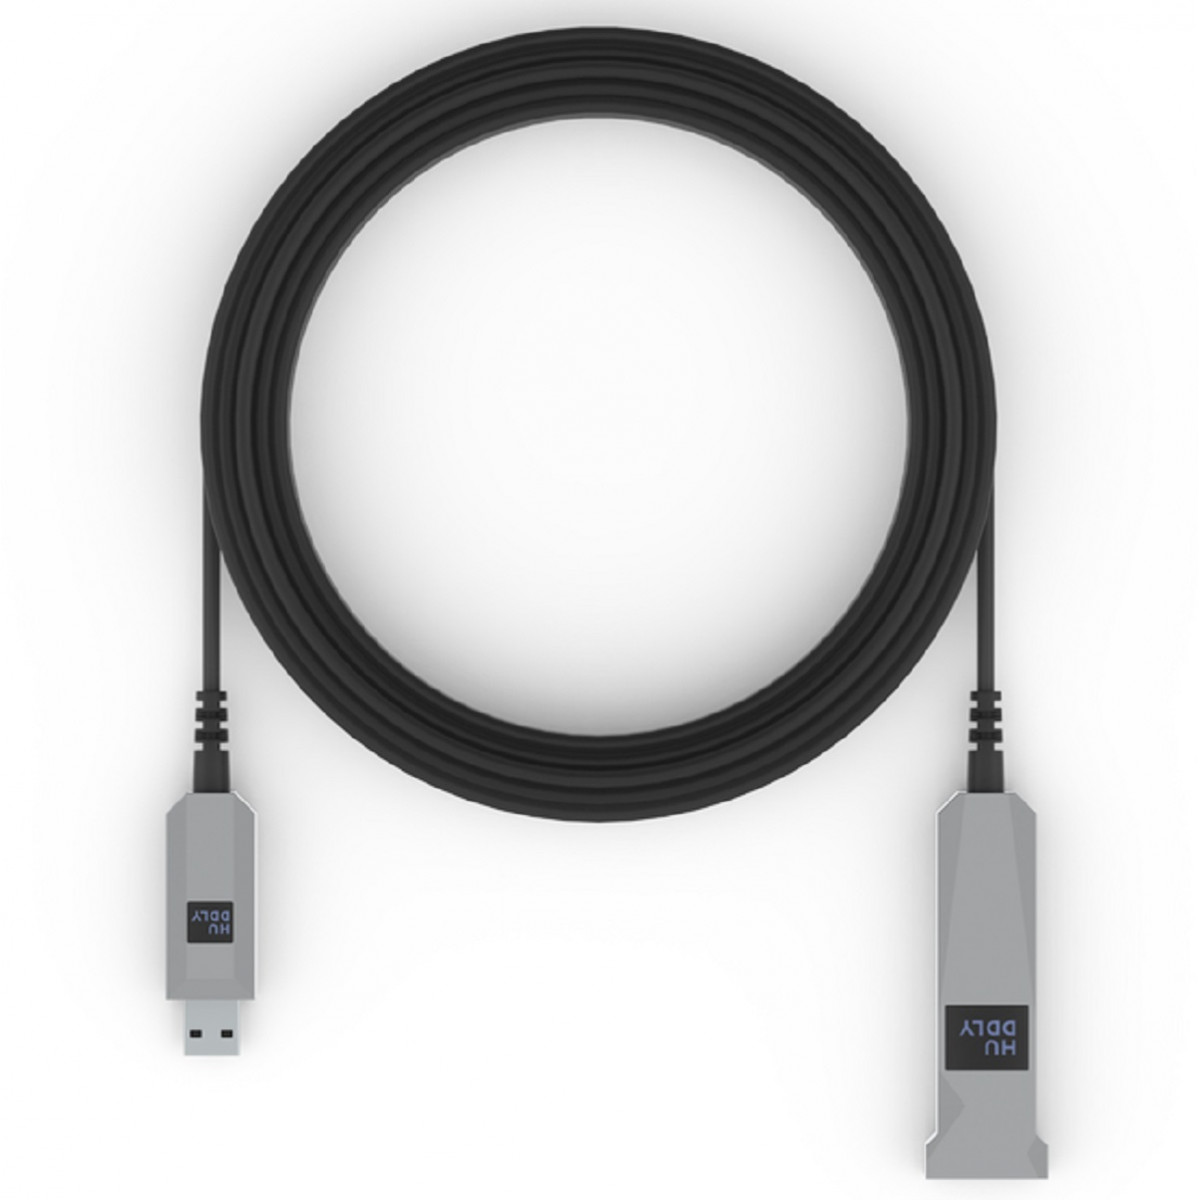 Huddly cable USB-C 90º a USB tipo A de 5 mts.